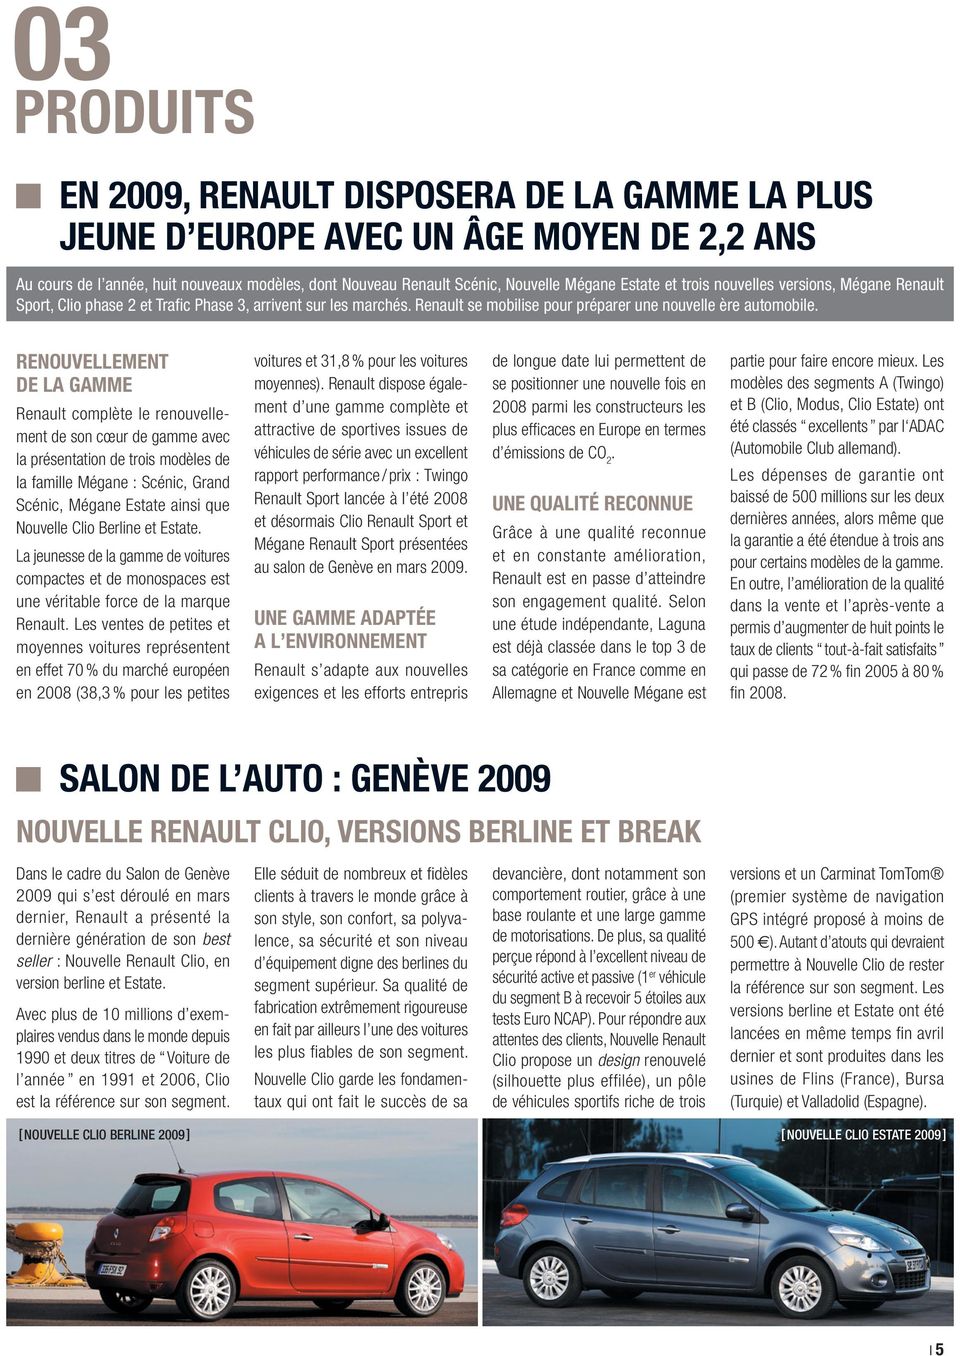 RENOUVELLEMENT DE LA GAMME Renault complète le renouvellement de son cœur de gamme avec la présentation de trois modèles de la famille Mégane : Scénic, Grand Scénic, Mégane Estate ainsi que Nouvelle